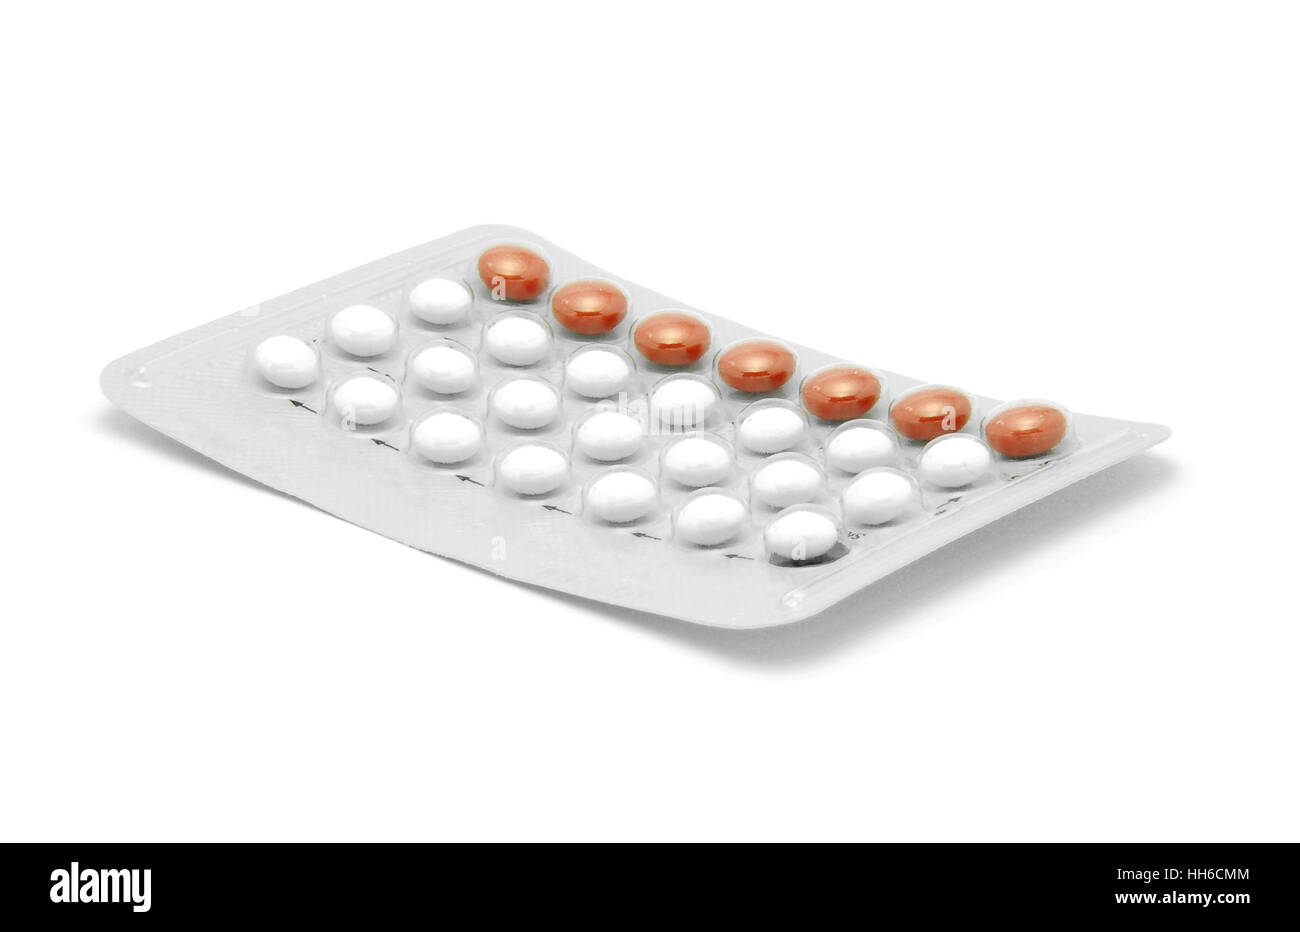 Isolé des pilules contraceptives Banque D'Images